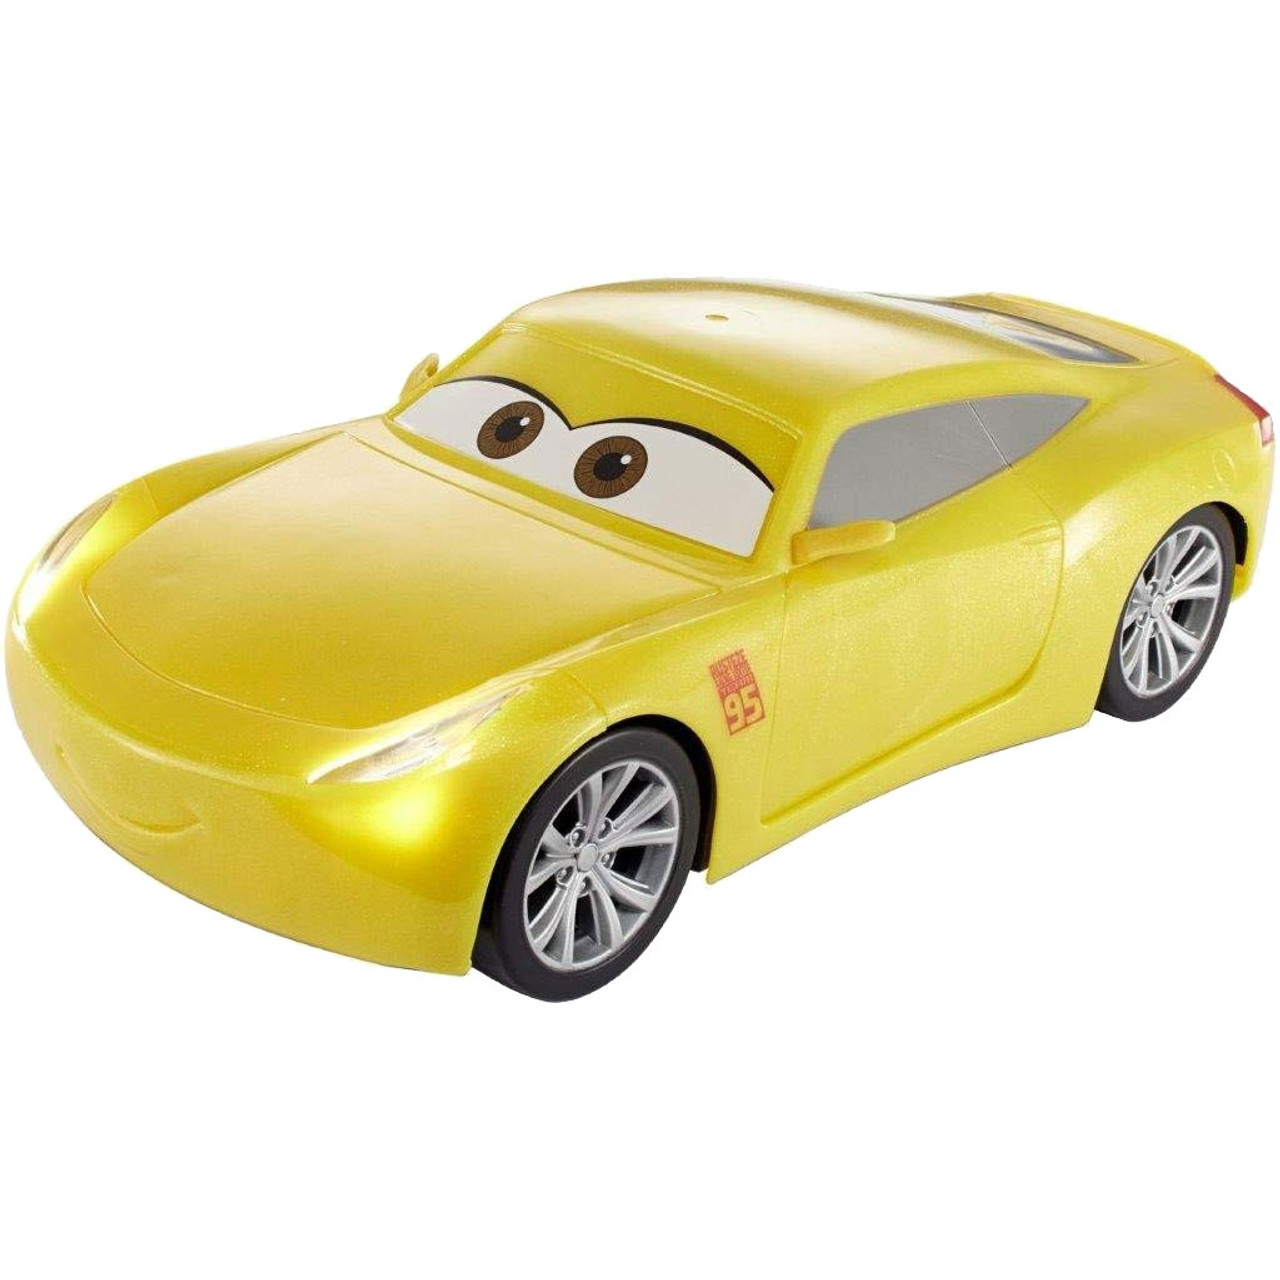 Voorwoord Verloren hart Alstublieft Disney Pixar Cars 3: MOVIE MOVES CRUZ RAMIREZ Interactive Vehicle -  Bubble-n-Squeak Toys